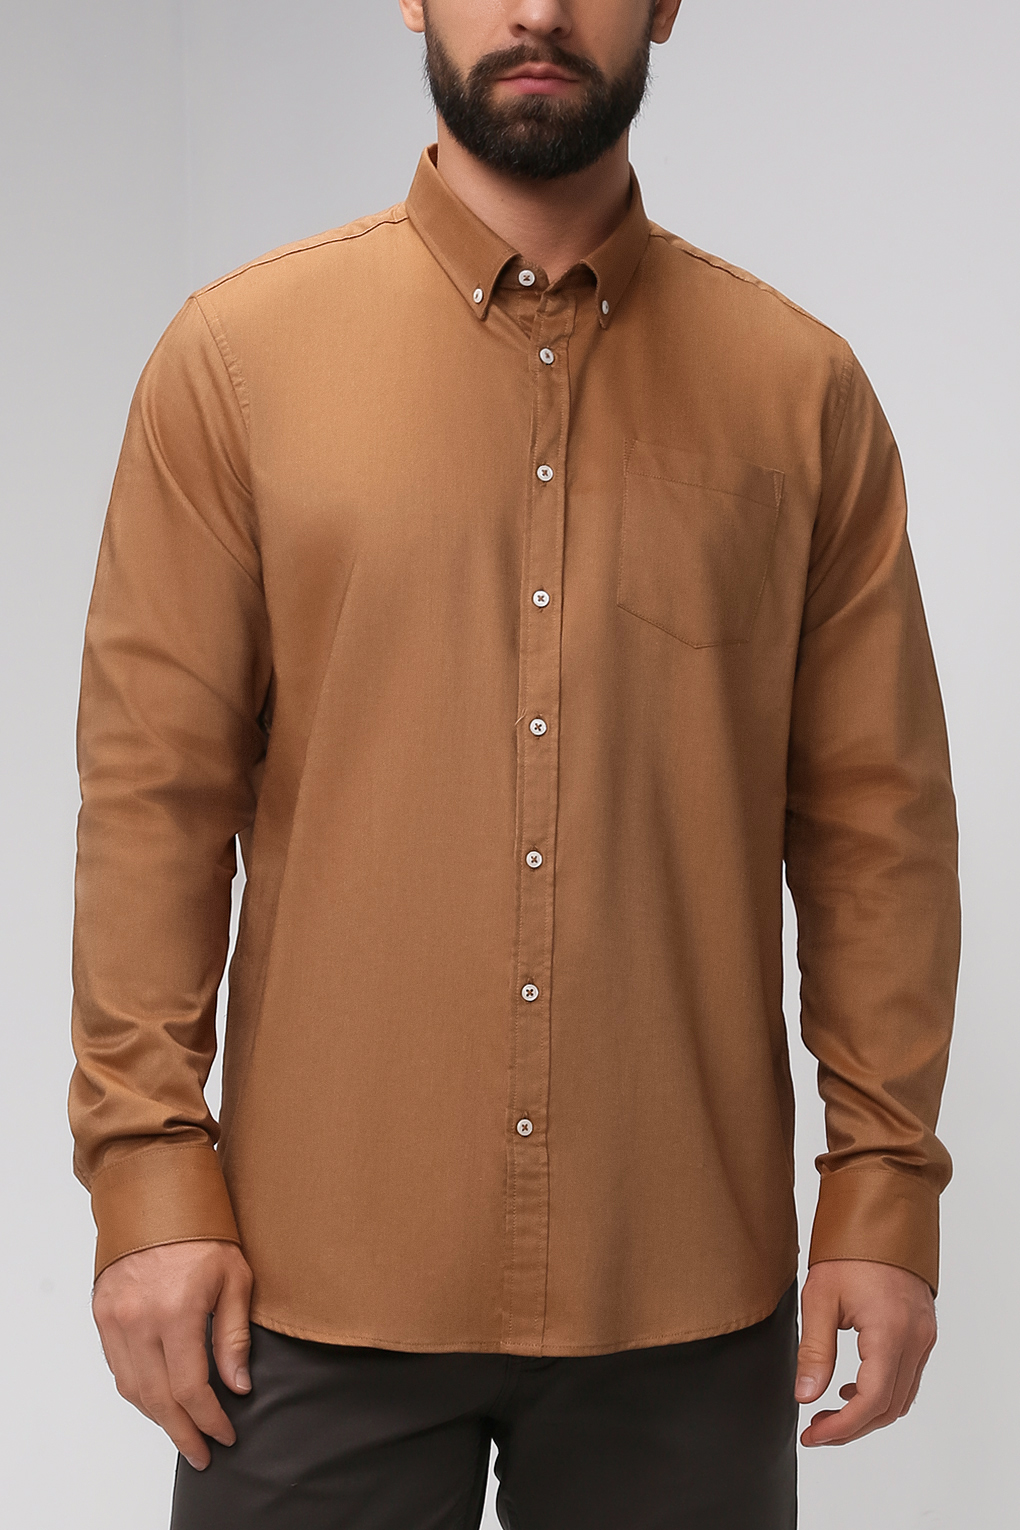 фото Рубашка мужская construe 2108 emir коричневая s